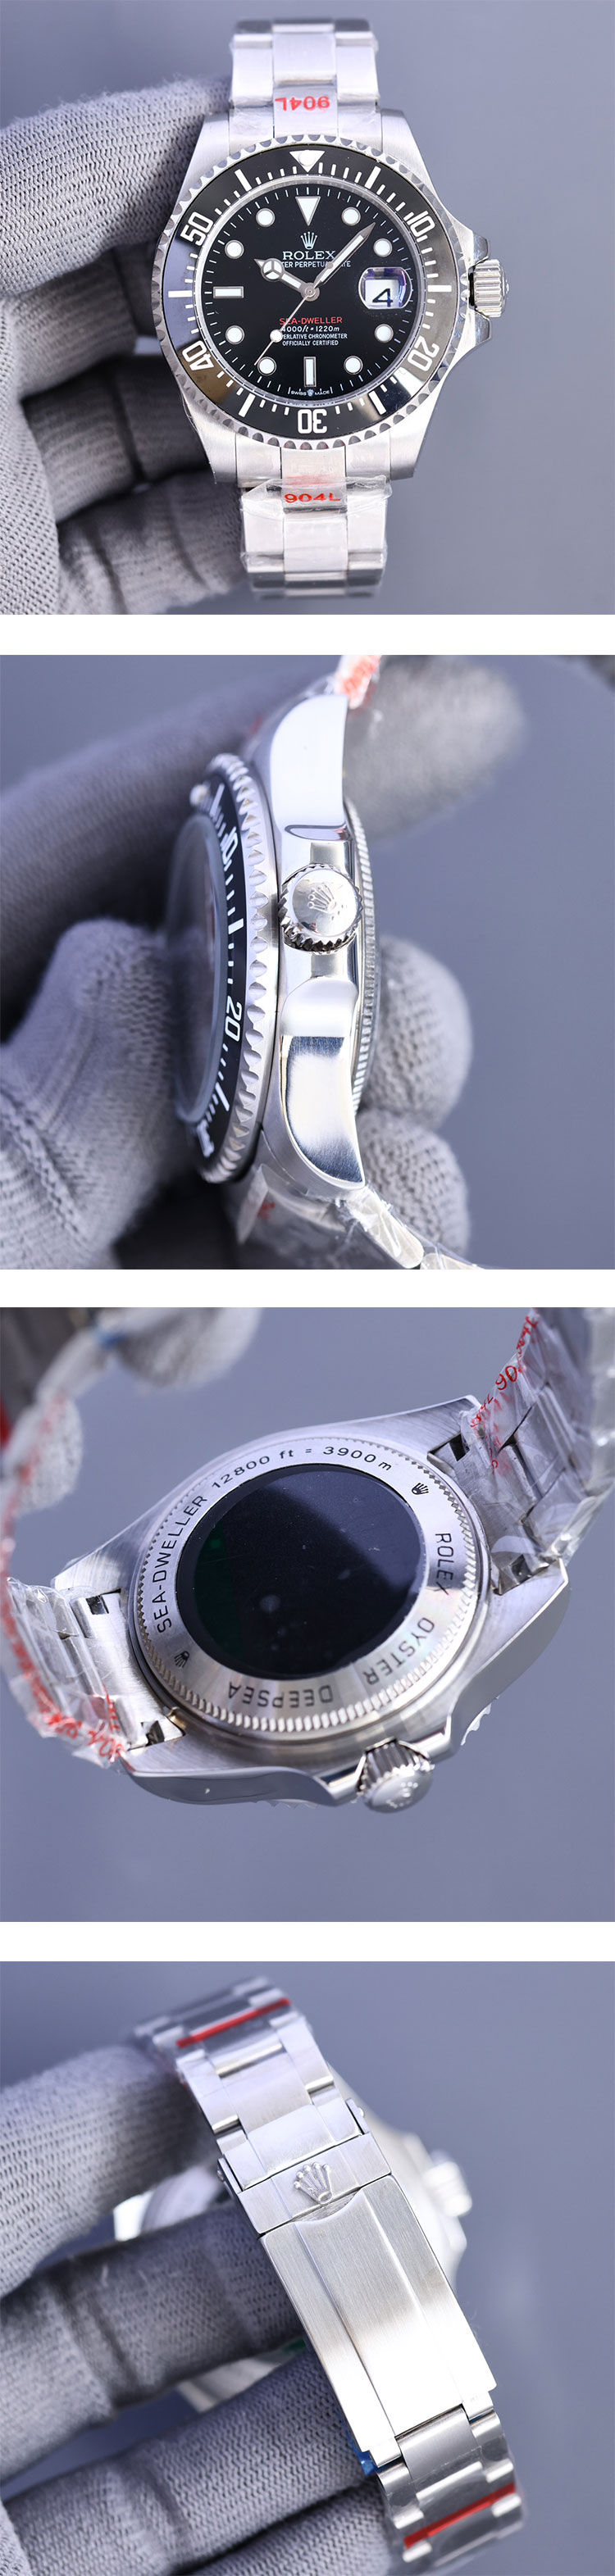 [最安価格挑戦 ] どこにもない高級時計 ロレックス 126600 シードゥエラーコピー時計 43mm